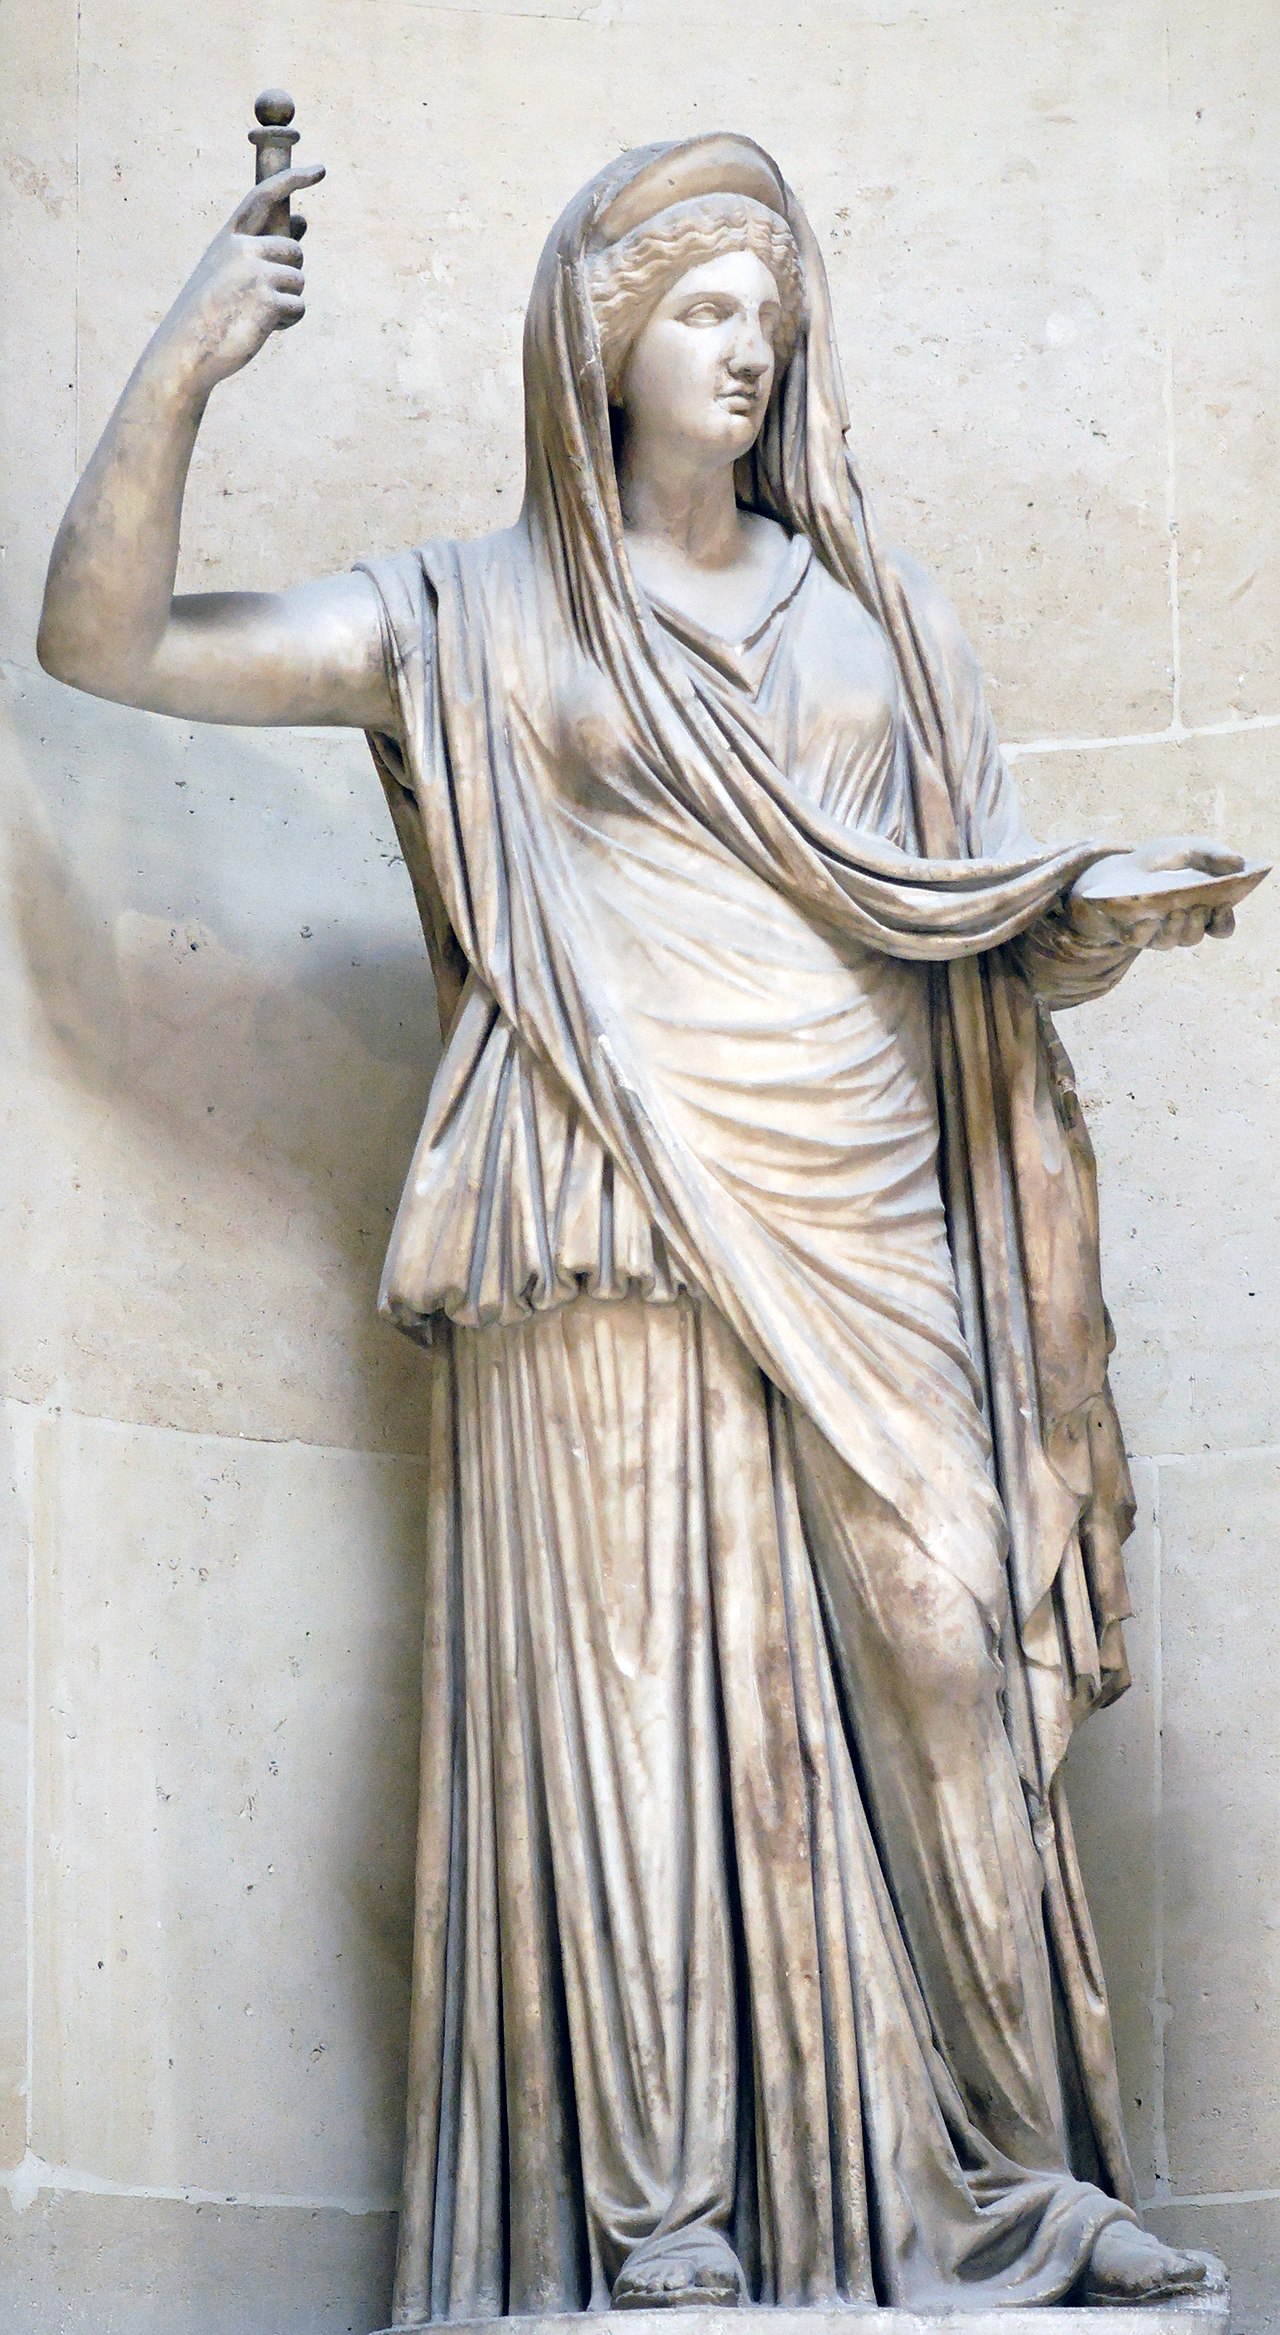 Боги древней греции гера